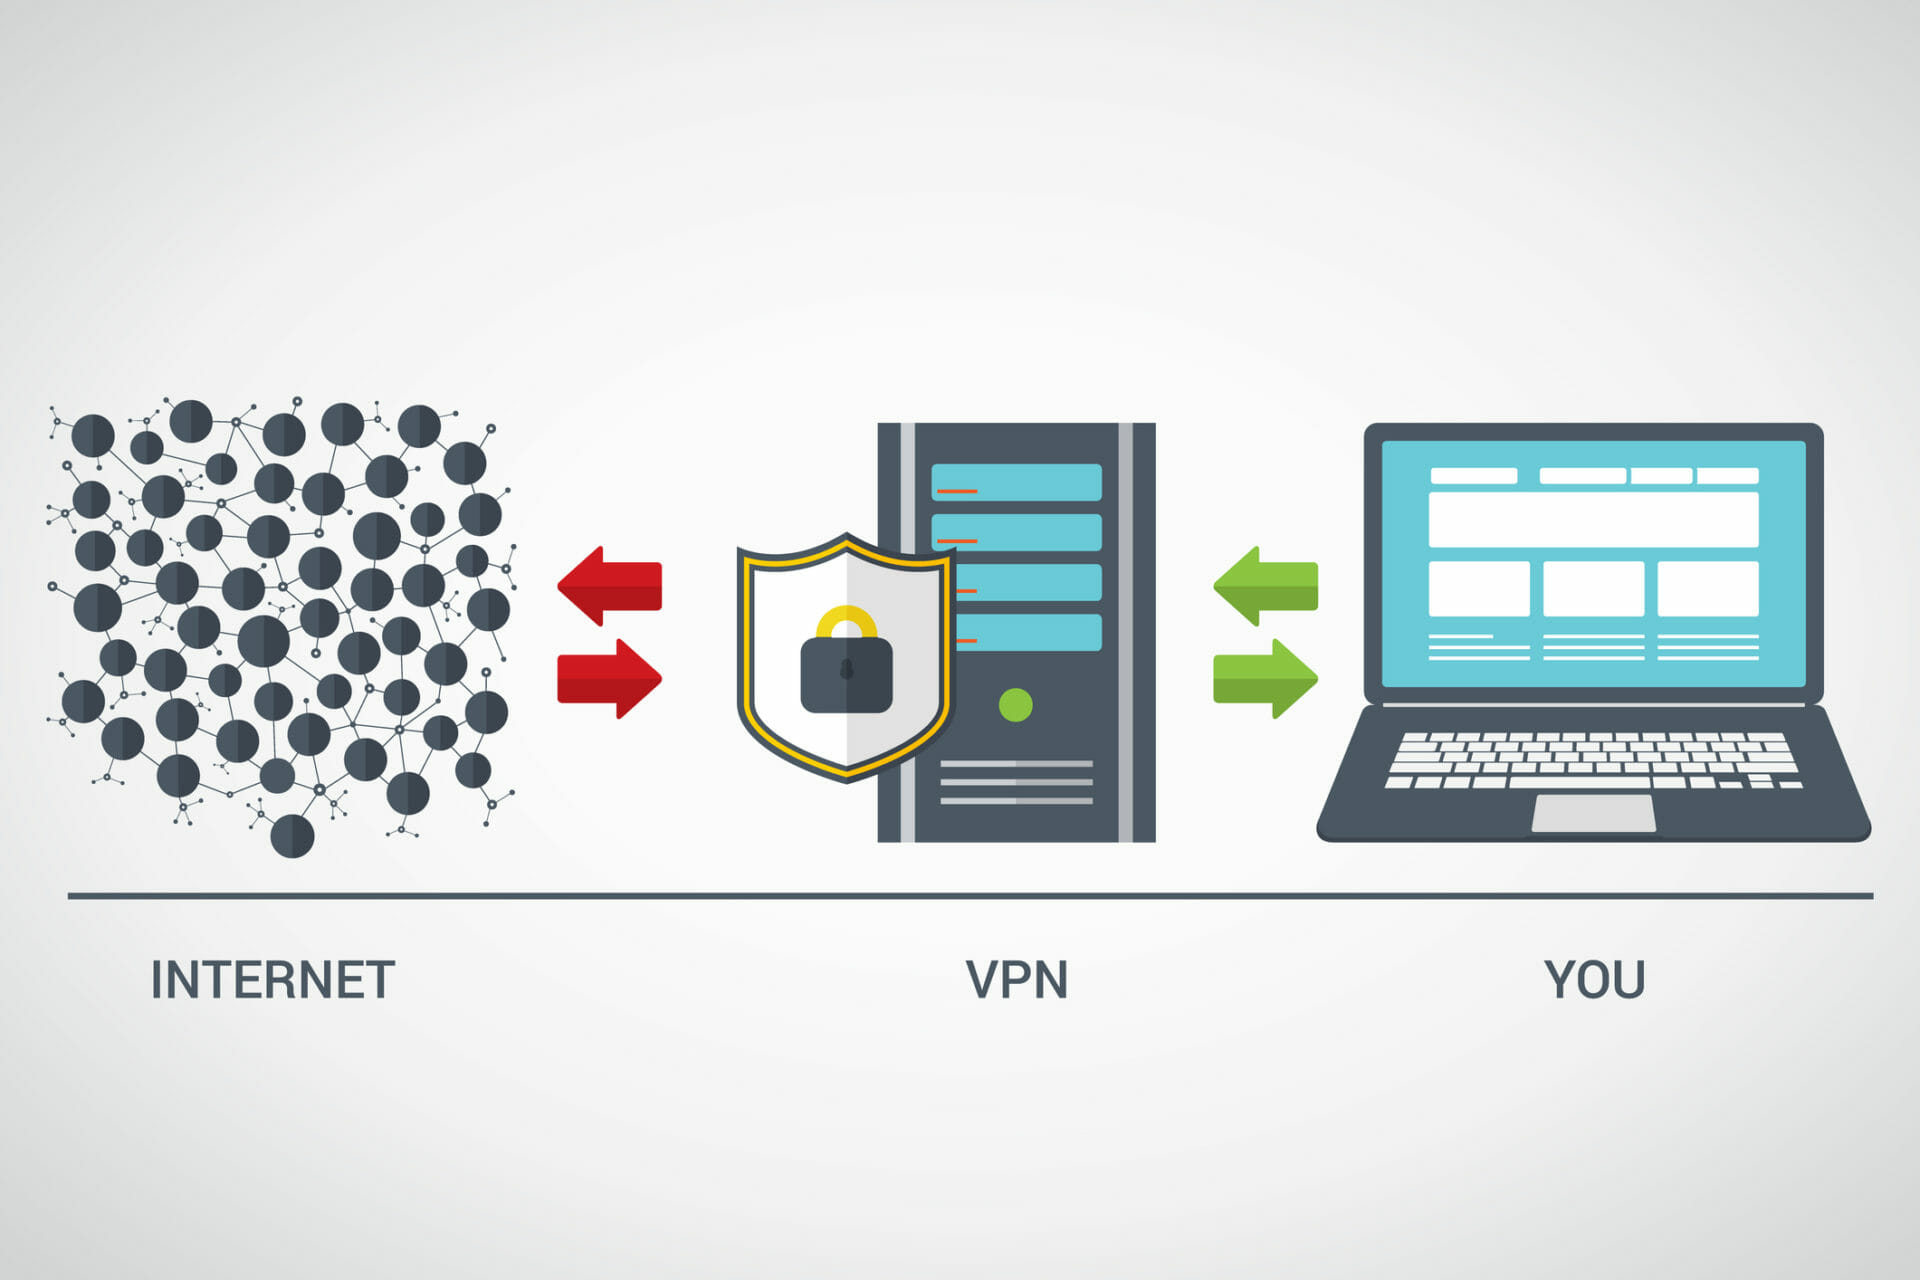 Is always on VPN more secure?